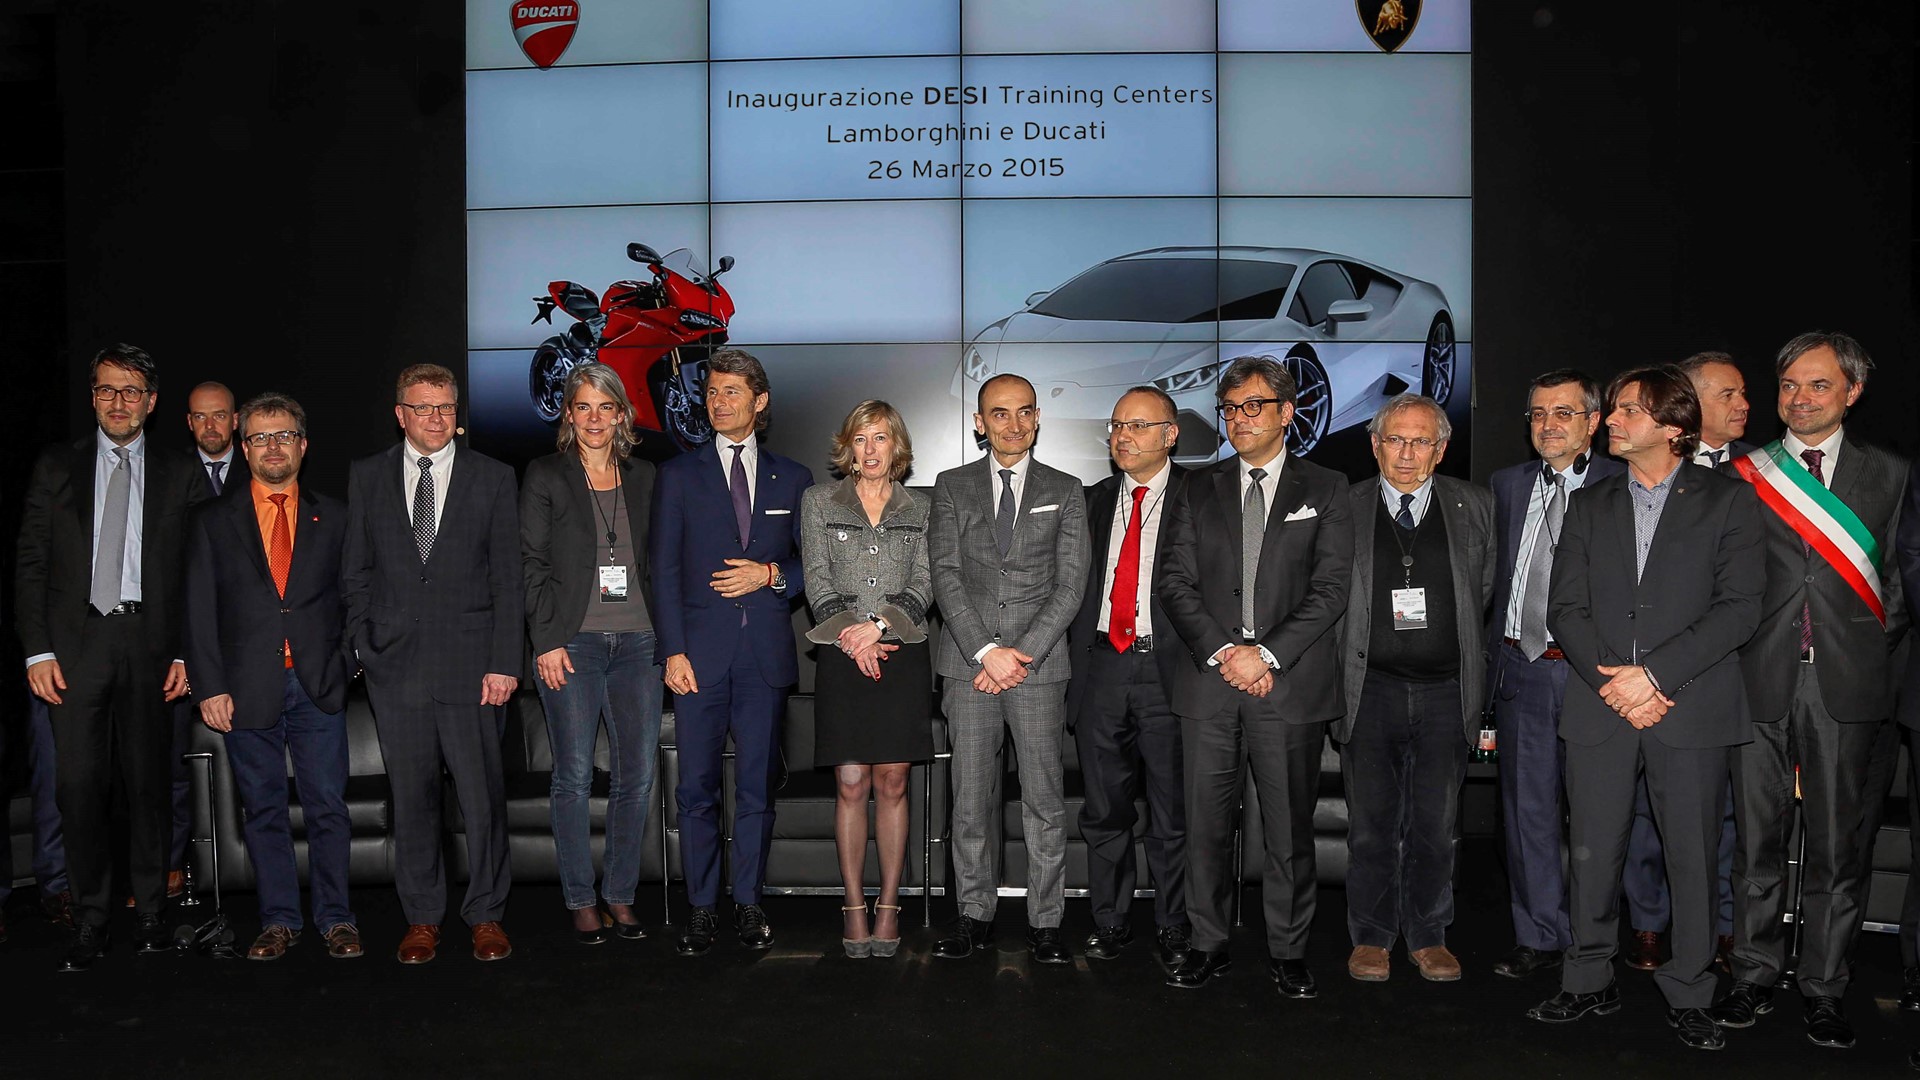 L'inaugurazione dei Ducati e Lamborghini DESI Training Centers il 26 marzo 2015